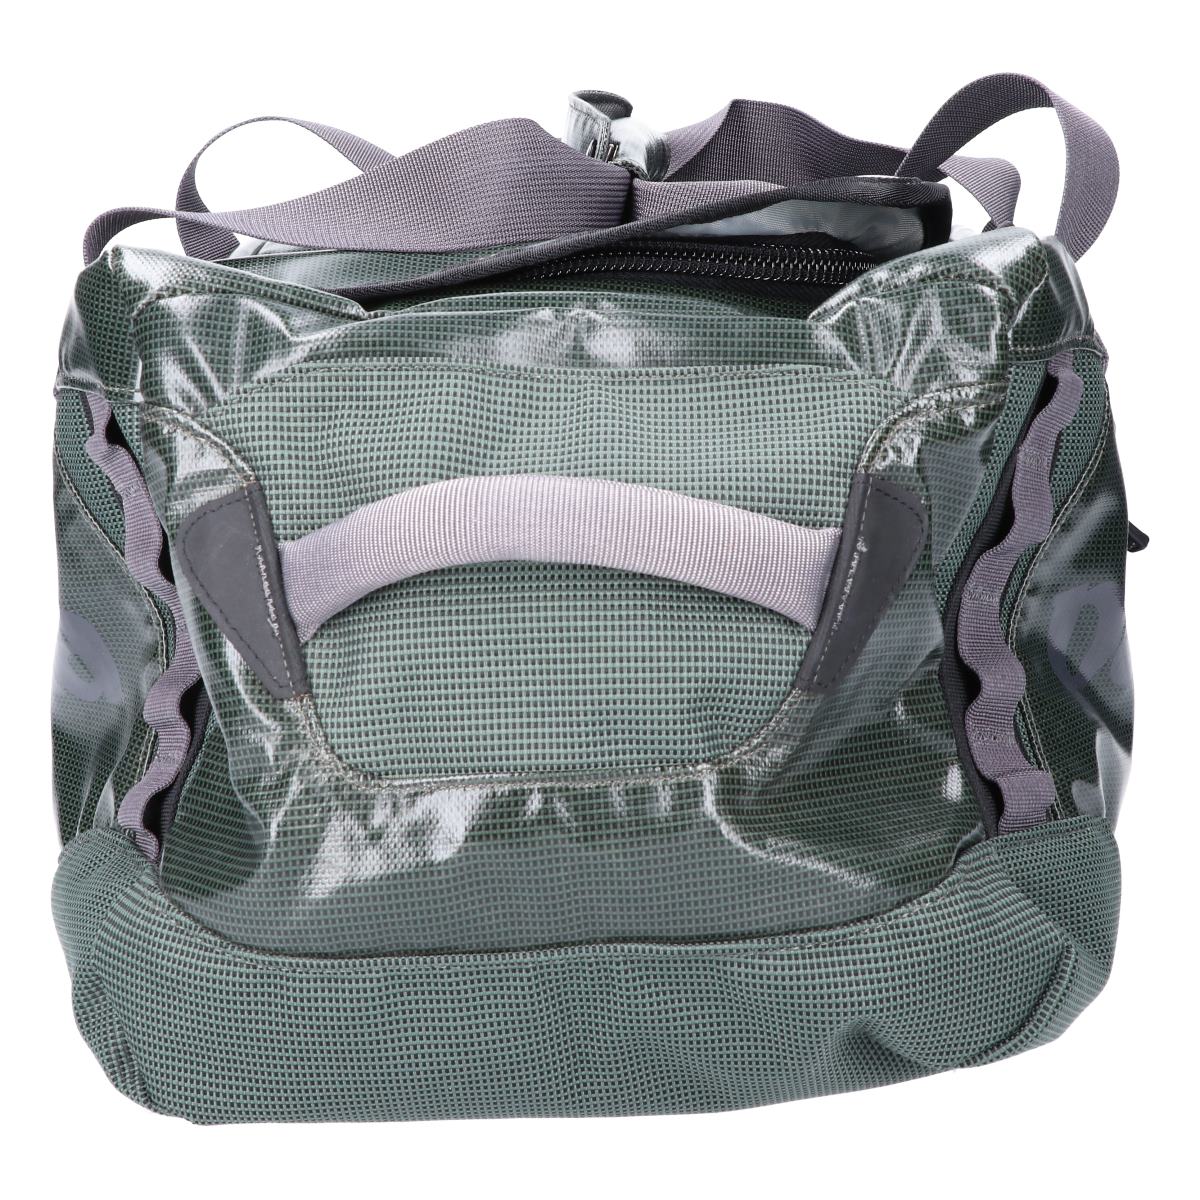 patagonia backpack as diaper bag